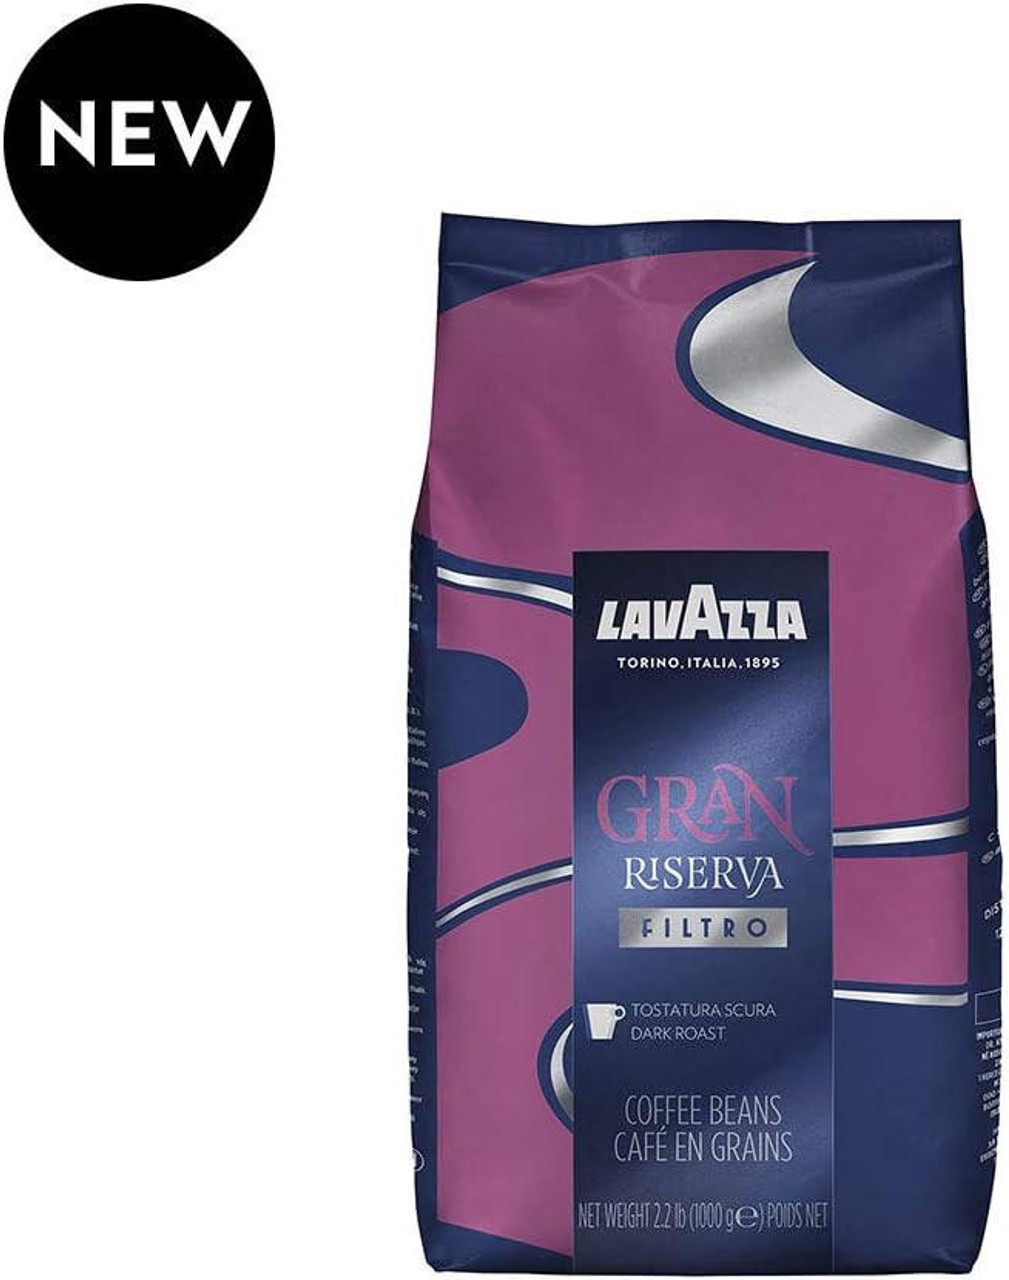 LAVAZZA Lavazza Gran Riserva Filtro Whole Bean Filter Coffee 2.2 lb. (6/Case) 